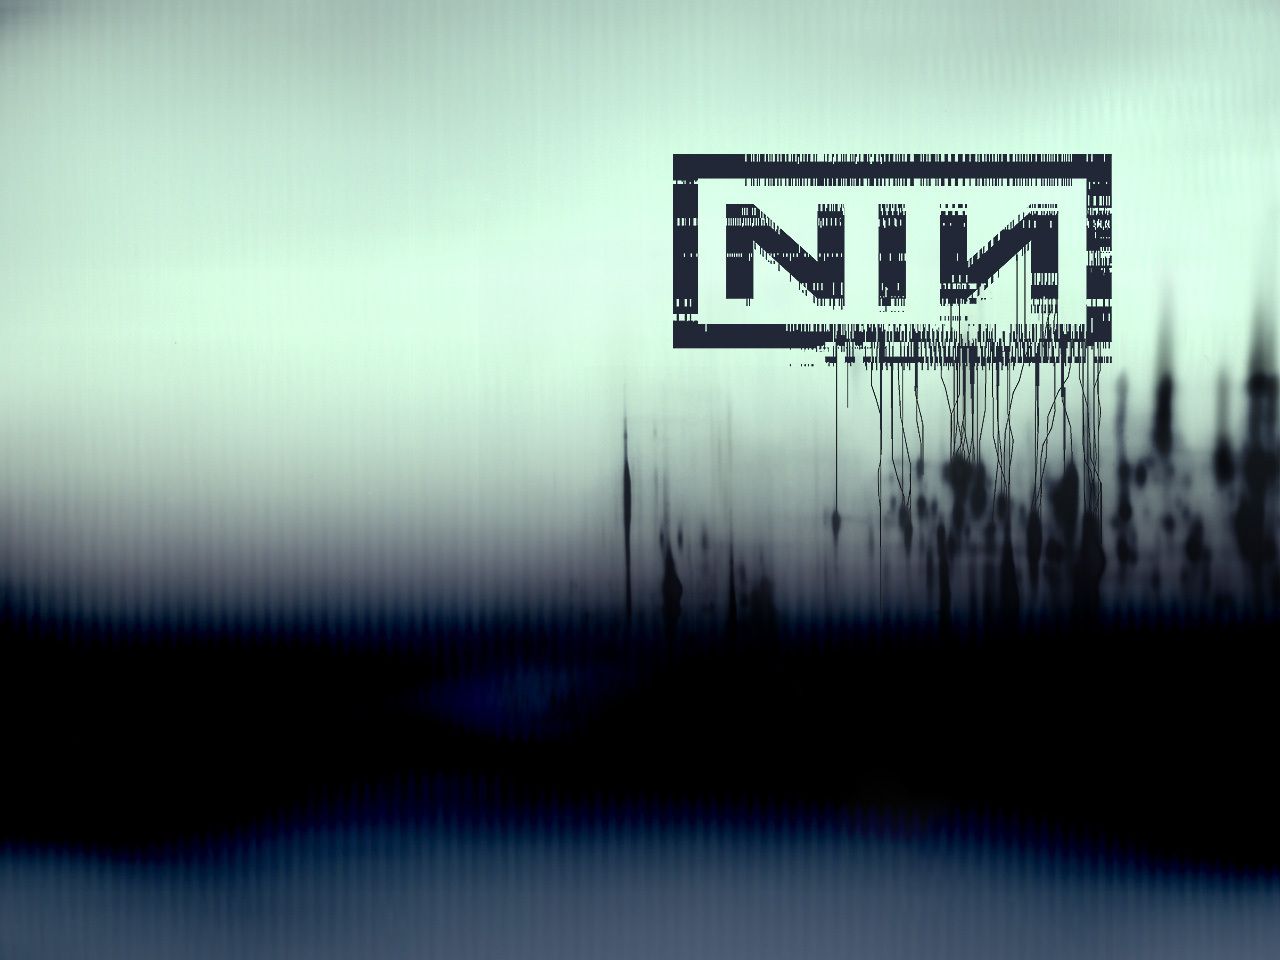 Khám phá những hình nền Nine Inch Nails cực đẹp với nhiều chủ đề khác nhau để đổi màu cho màn hình của bạn. Bạn sẽ bị thu hút bởi những thiết kế độc đáo với sắc đỏ tươi sáng và đen u tối của những bài hát của ban nhạc.